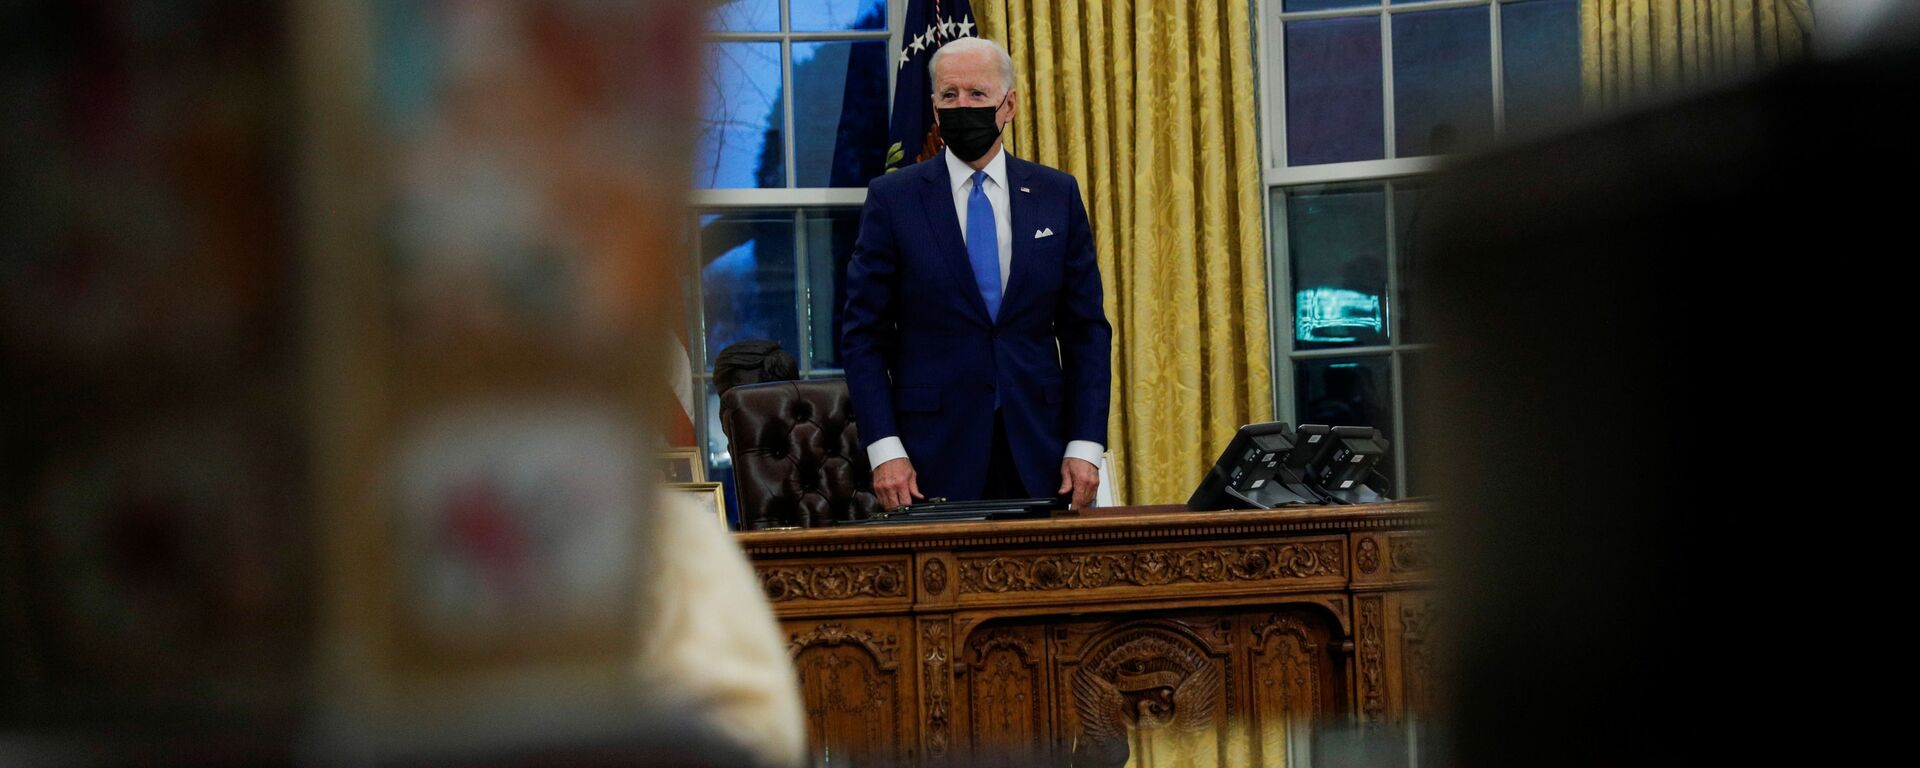 Joe Biden, presidente de EEUU, en el Despacho Oval de la Casa Blanca - Sputnik Mundo, 1920, 04.02.2021